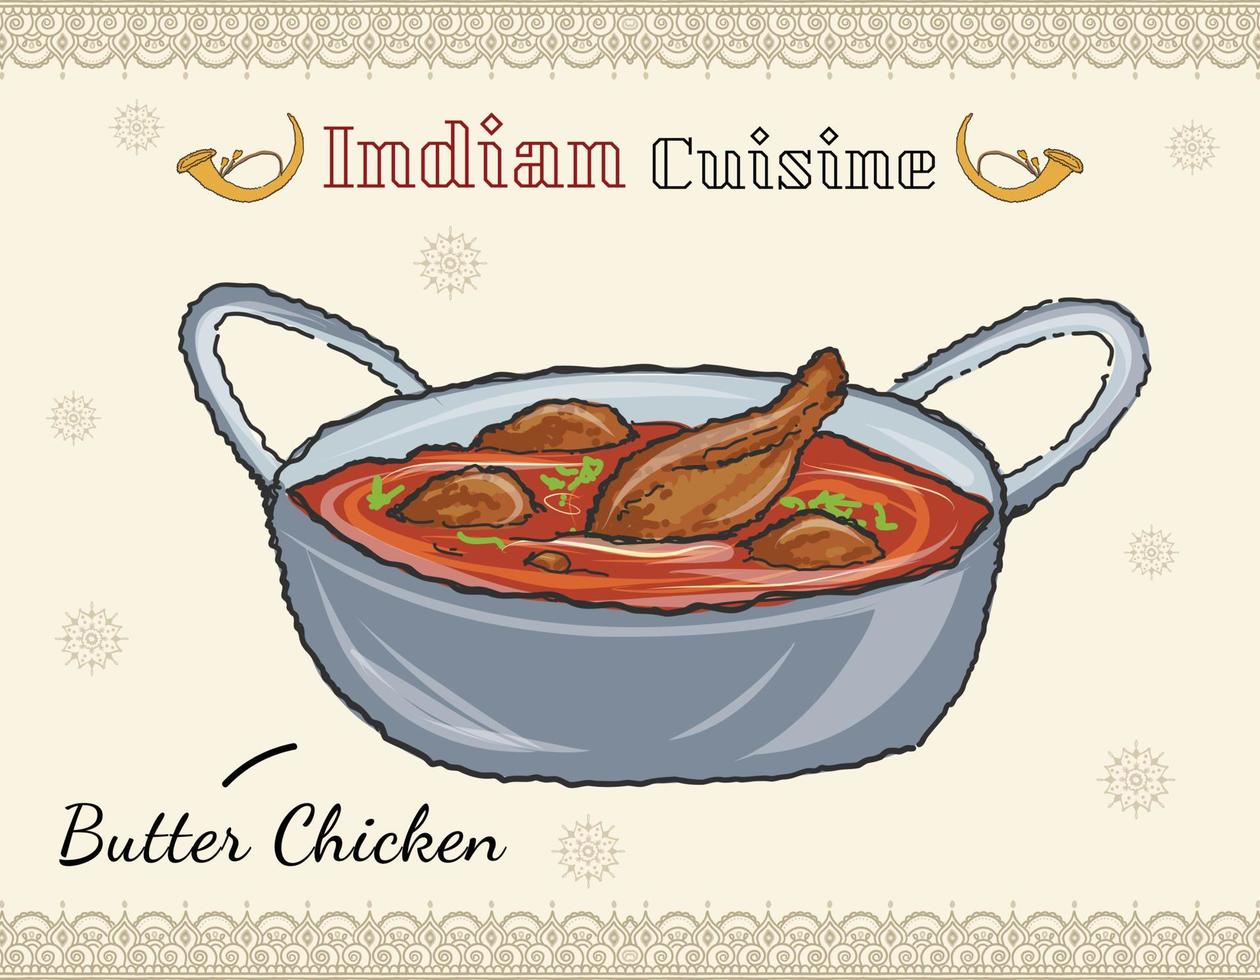 comida indiana tradicional, carne em molho de tomate temperado. comida indiana de manteiga de frango com pão nan e fatia de limão. ilustração de menu de restaurante ou dhaba. vetor